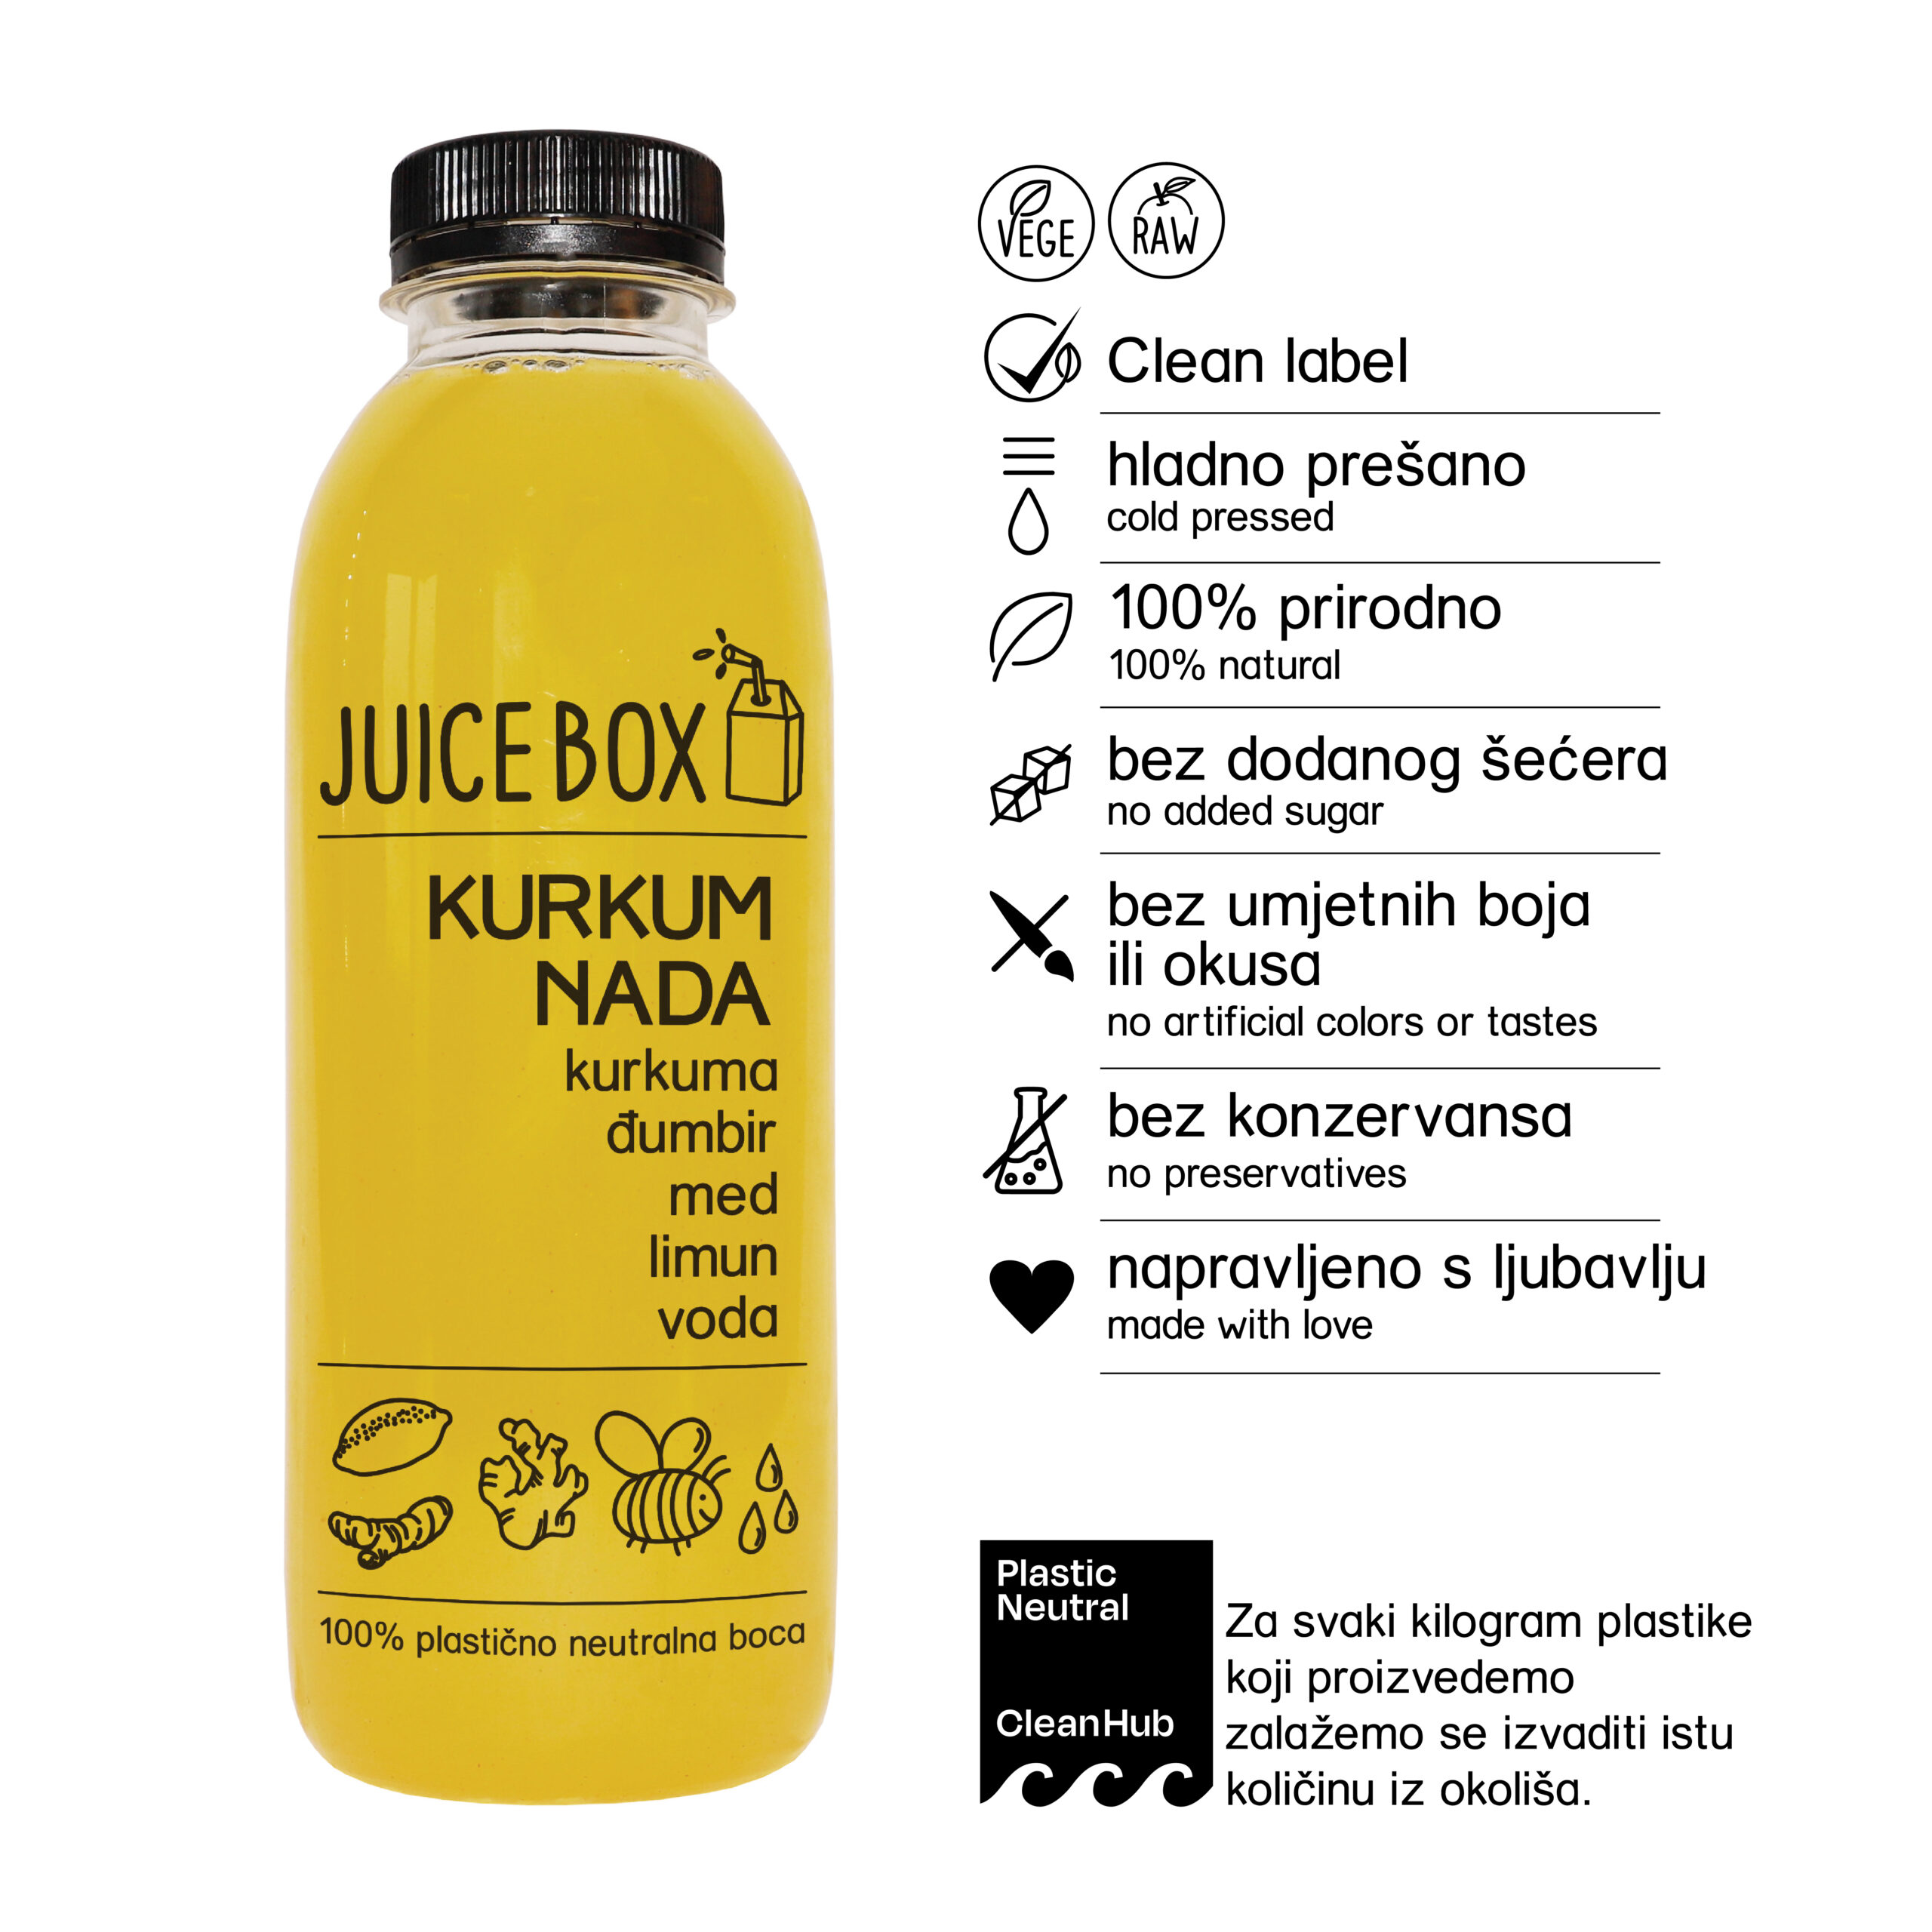 Kurkumnada je poput malog sunca u boci - njeni žuto-narančasti sastojci poput kurkume, đumbira i limuna pomažu u jačanju imuniteta, dok njen slatki okus meda u kombinaciji s vodom pomaže u osvježenju i hidrataciji tijela!